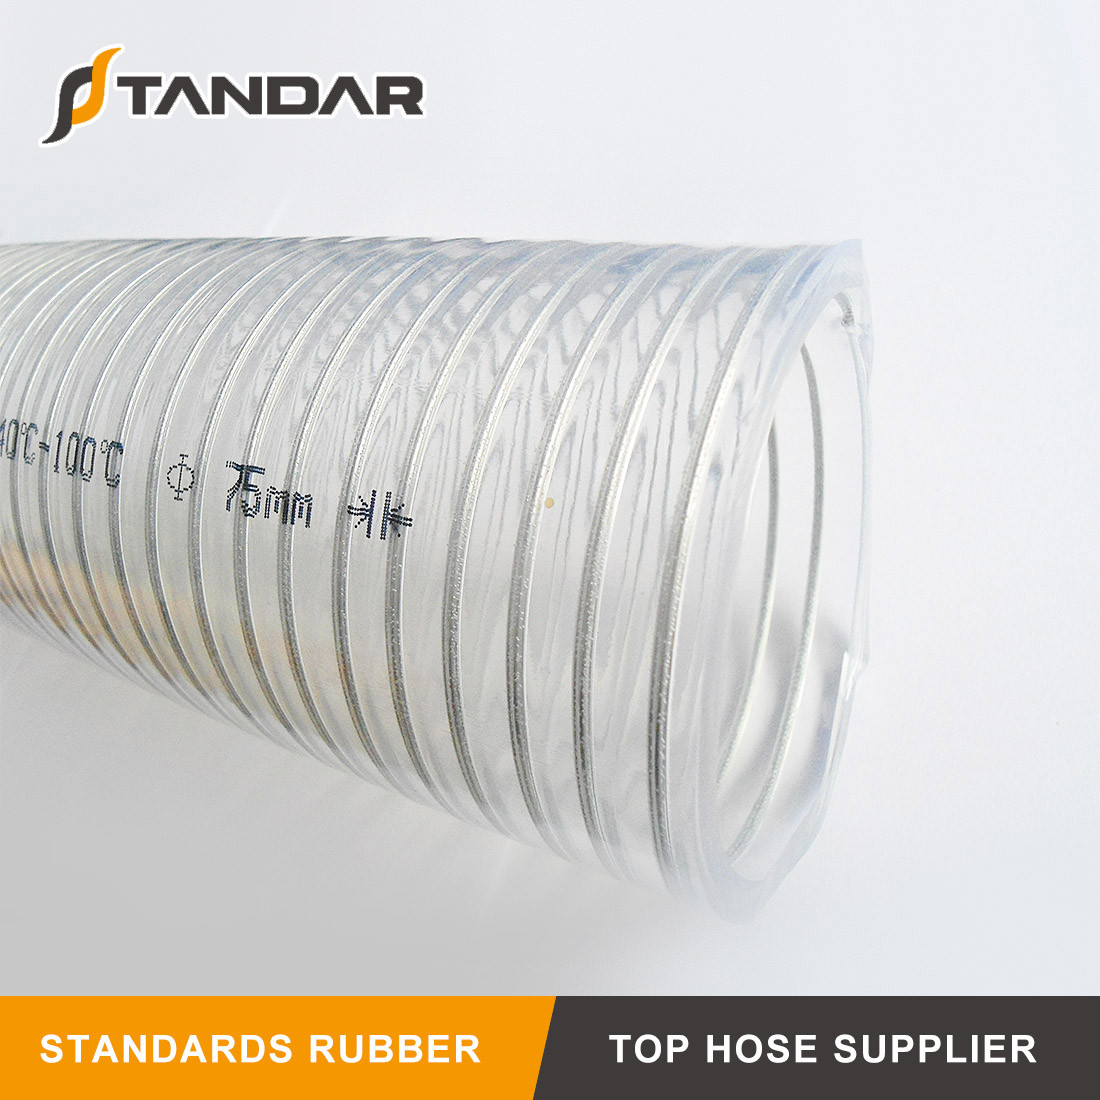 TEN-HIGH manguera para la cadena de producción alimentaria longitud de 2 m ID x DE Tubo de silicona de calidad alimentaria transparente grosor de la pared 2,5 mm 10 mm x 15 mm 